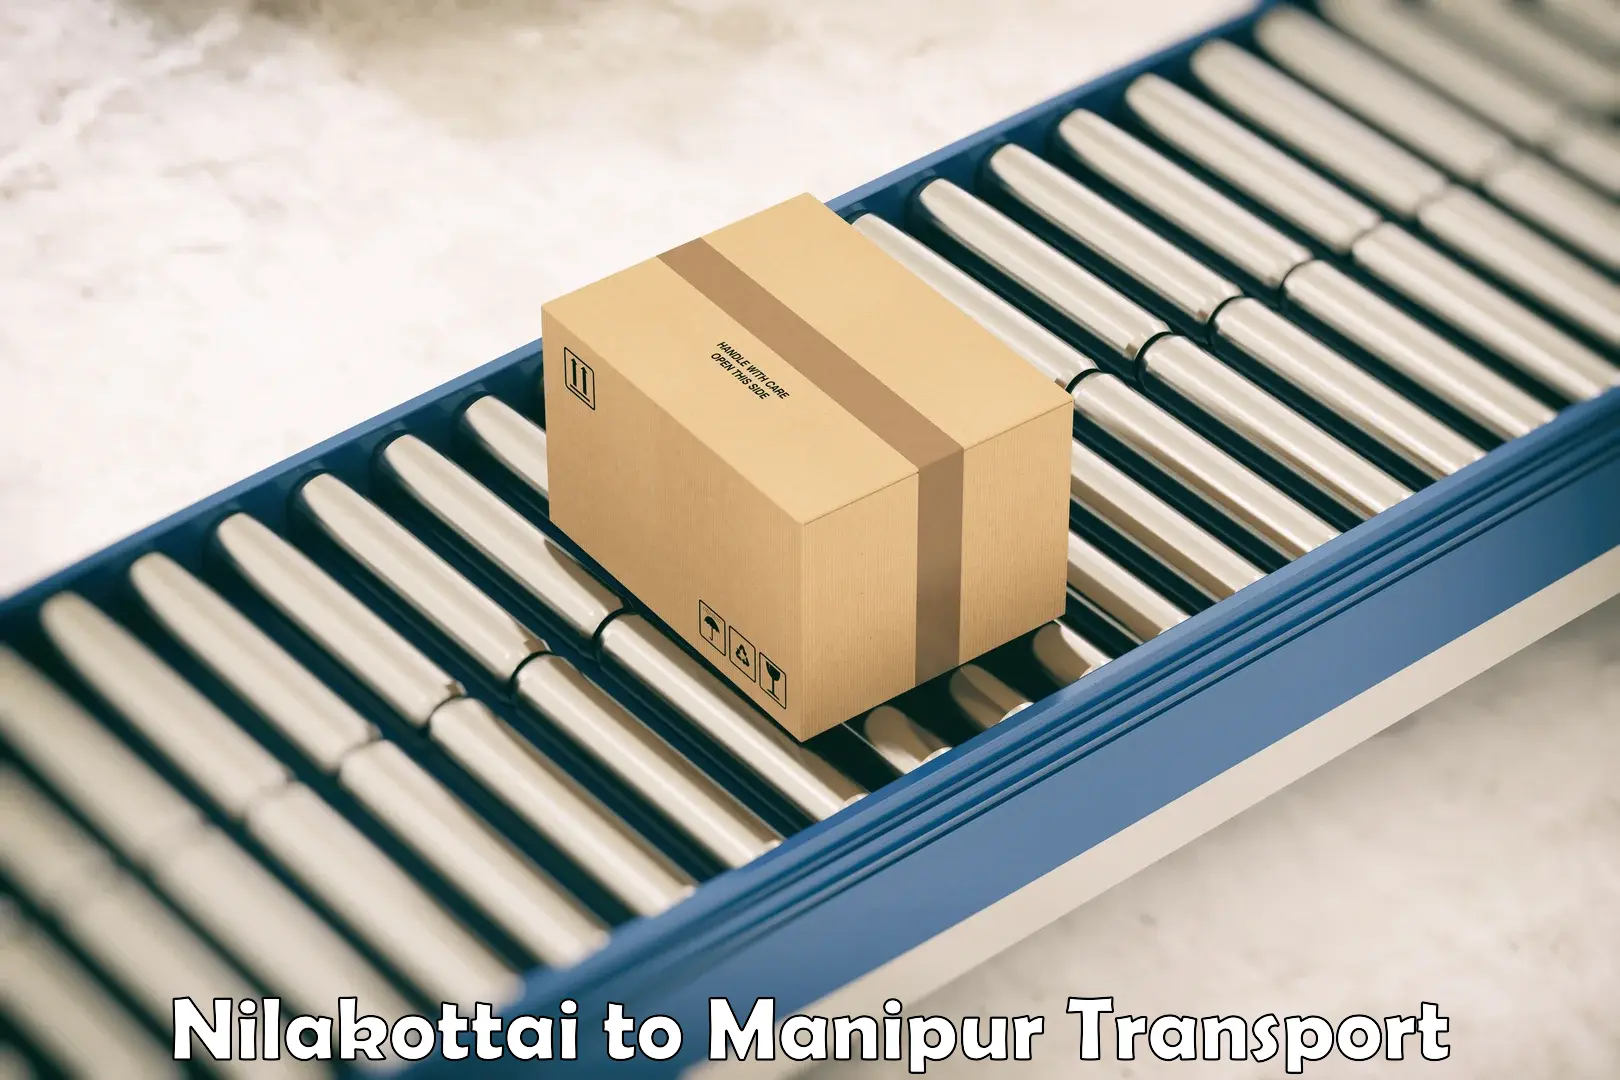 Furniture transport service Nilakottai to NIT Manipur